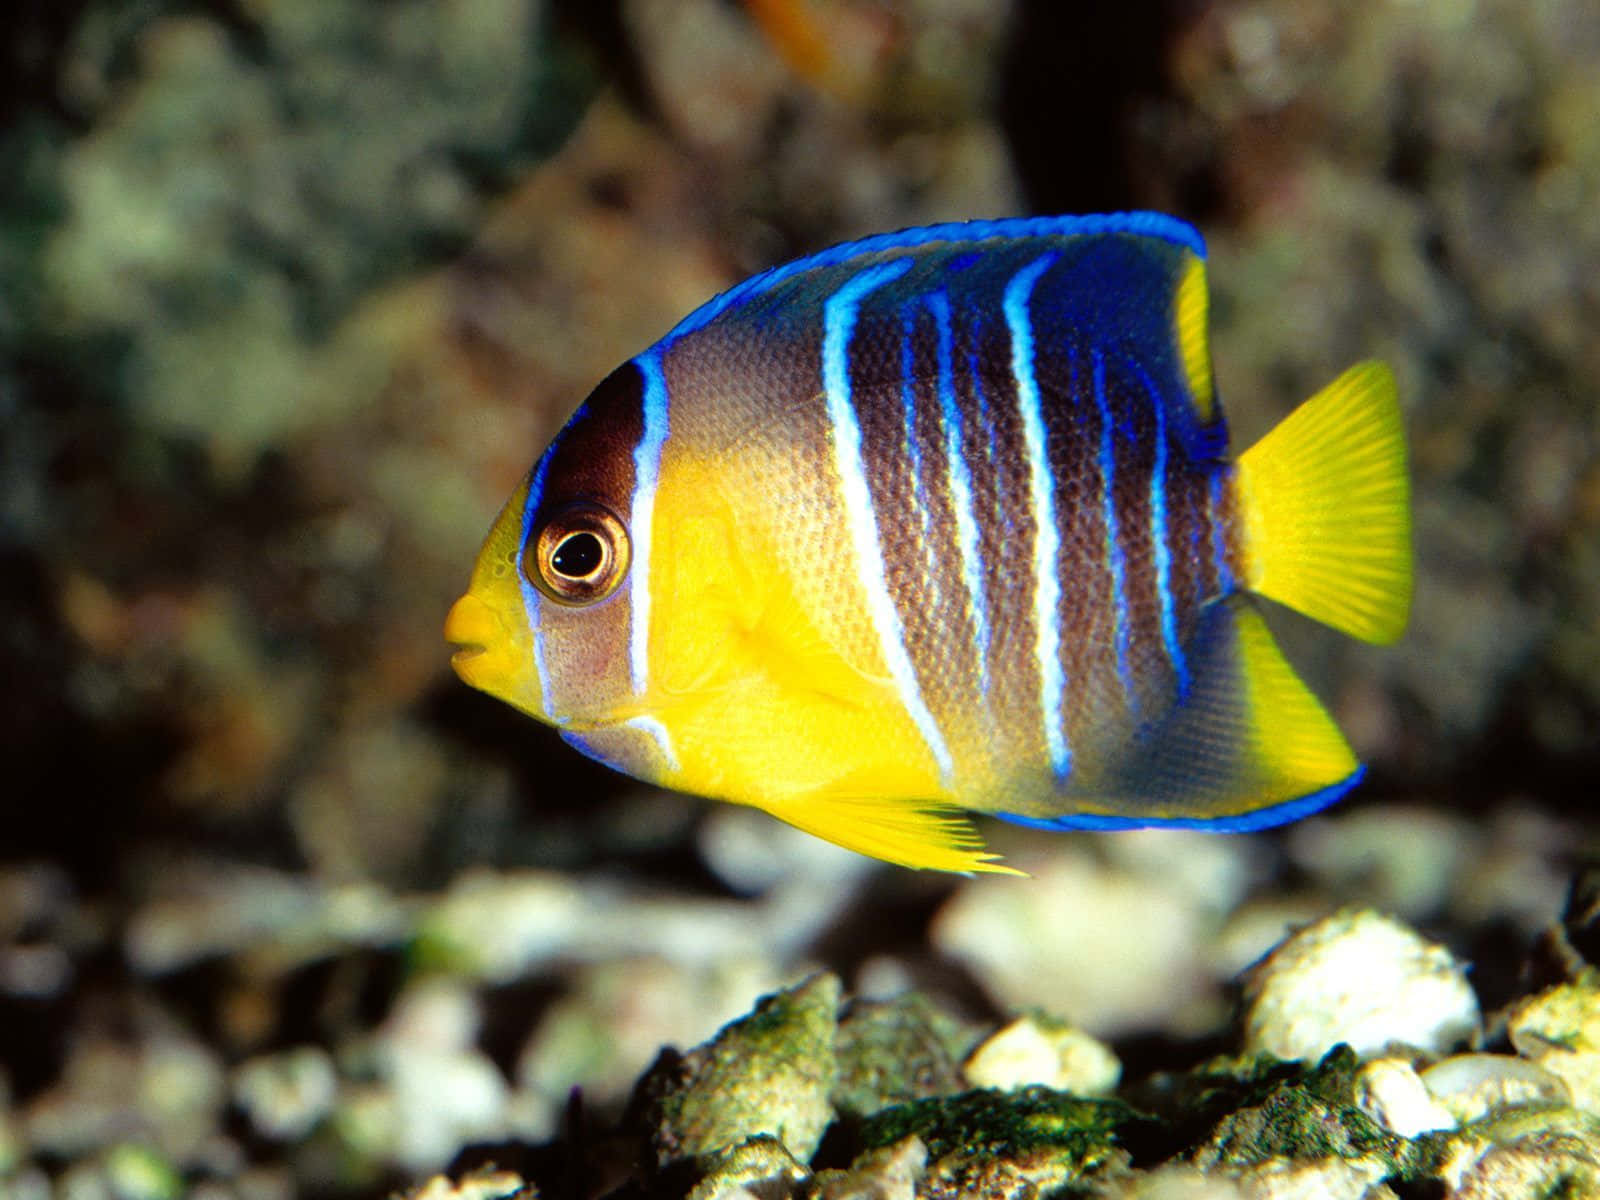 Nyd synet af farverige fisk i et akvarium!